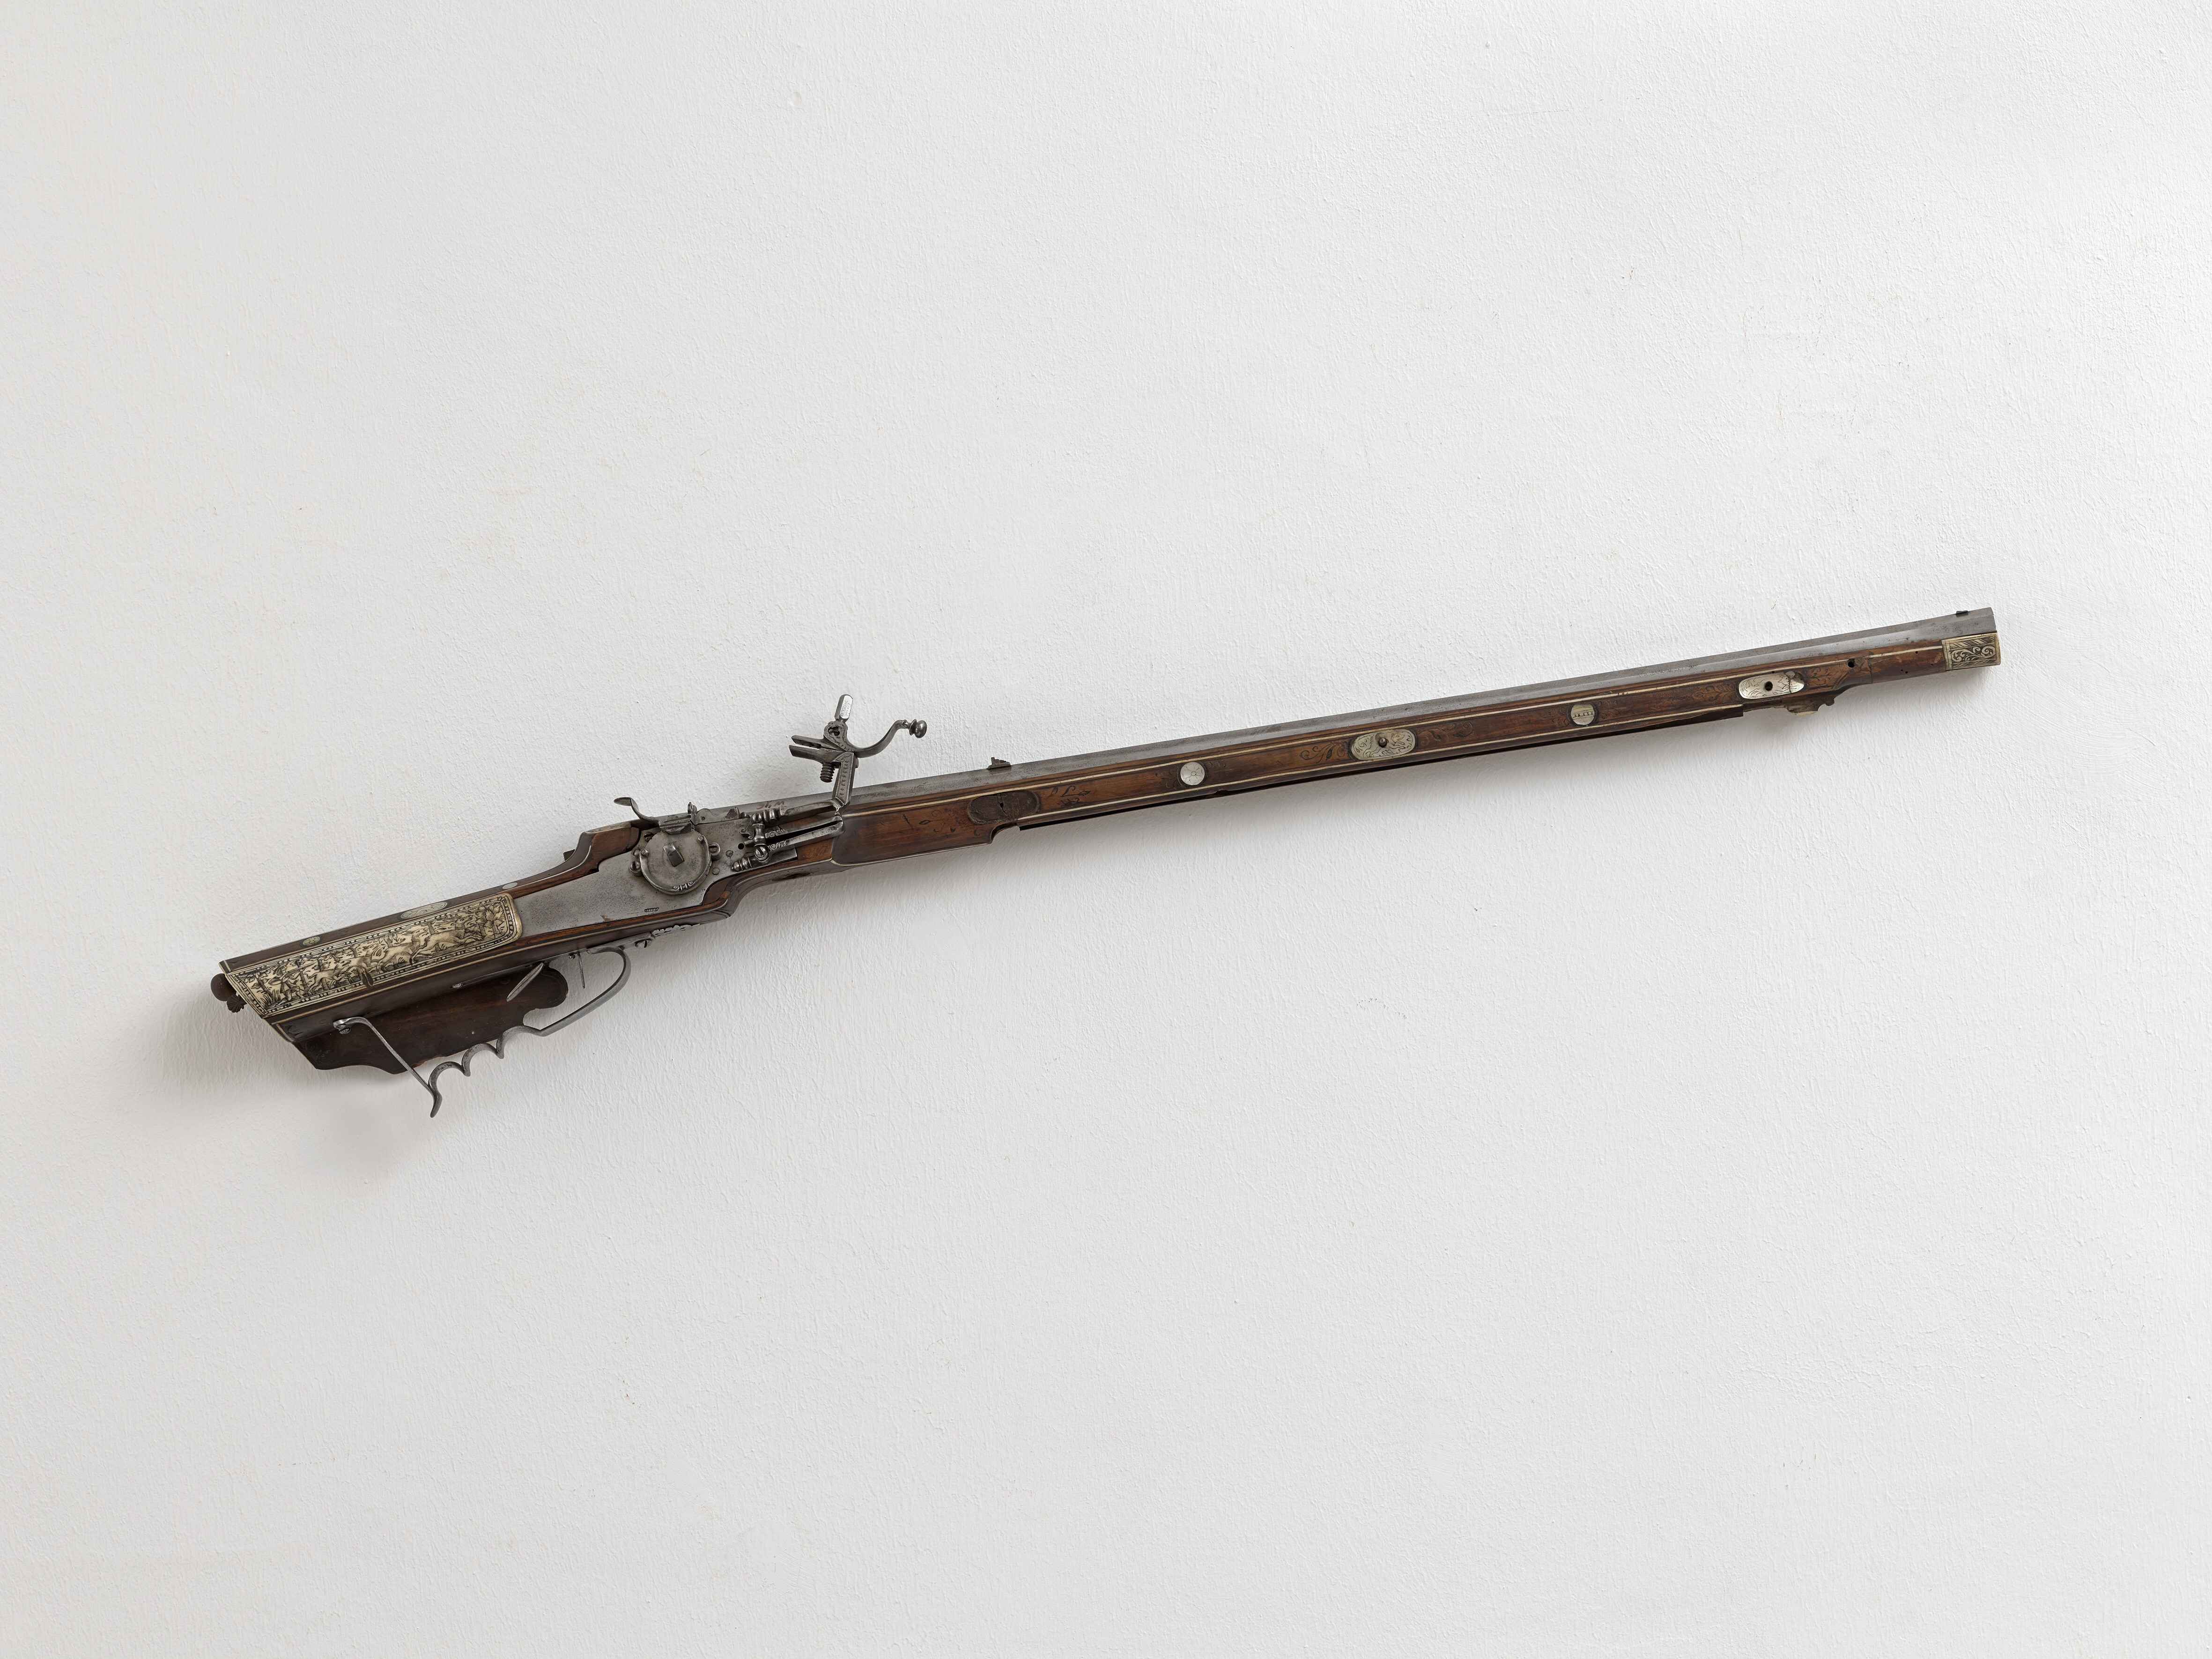 Radschlossgewehr mit Elfenbeineinlagen, um 1600 (Städtisches Museum Schloss Rheydt CC BY)